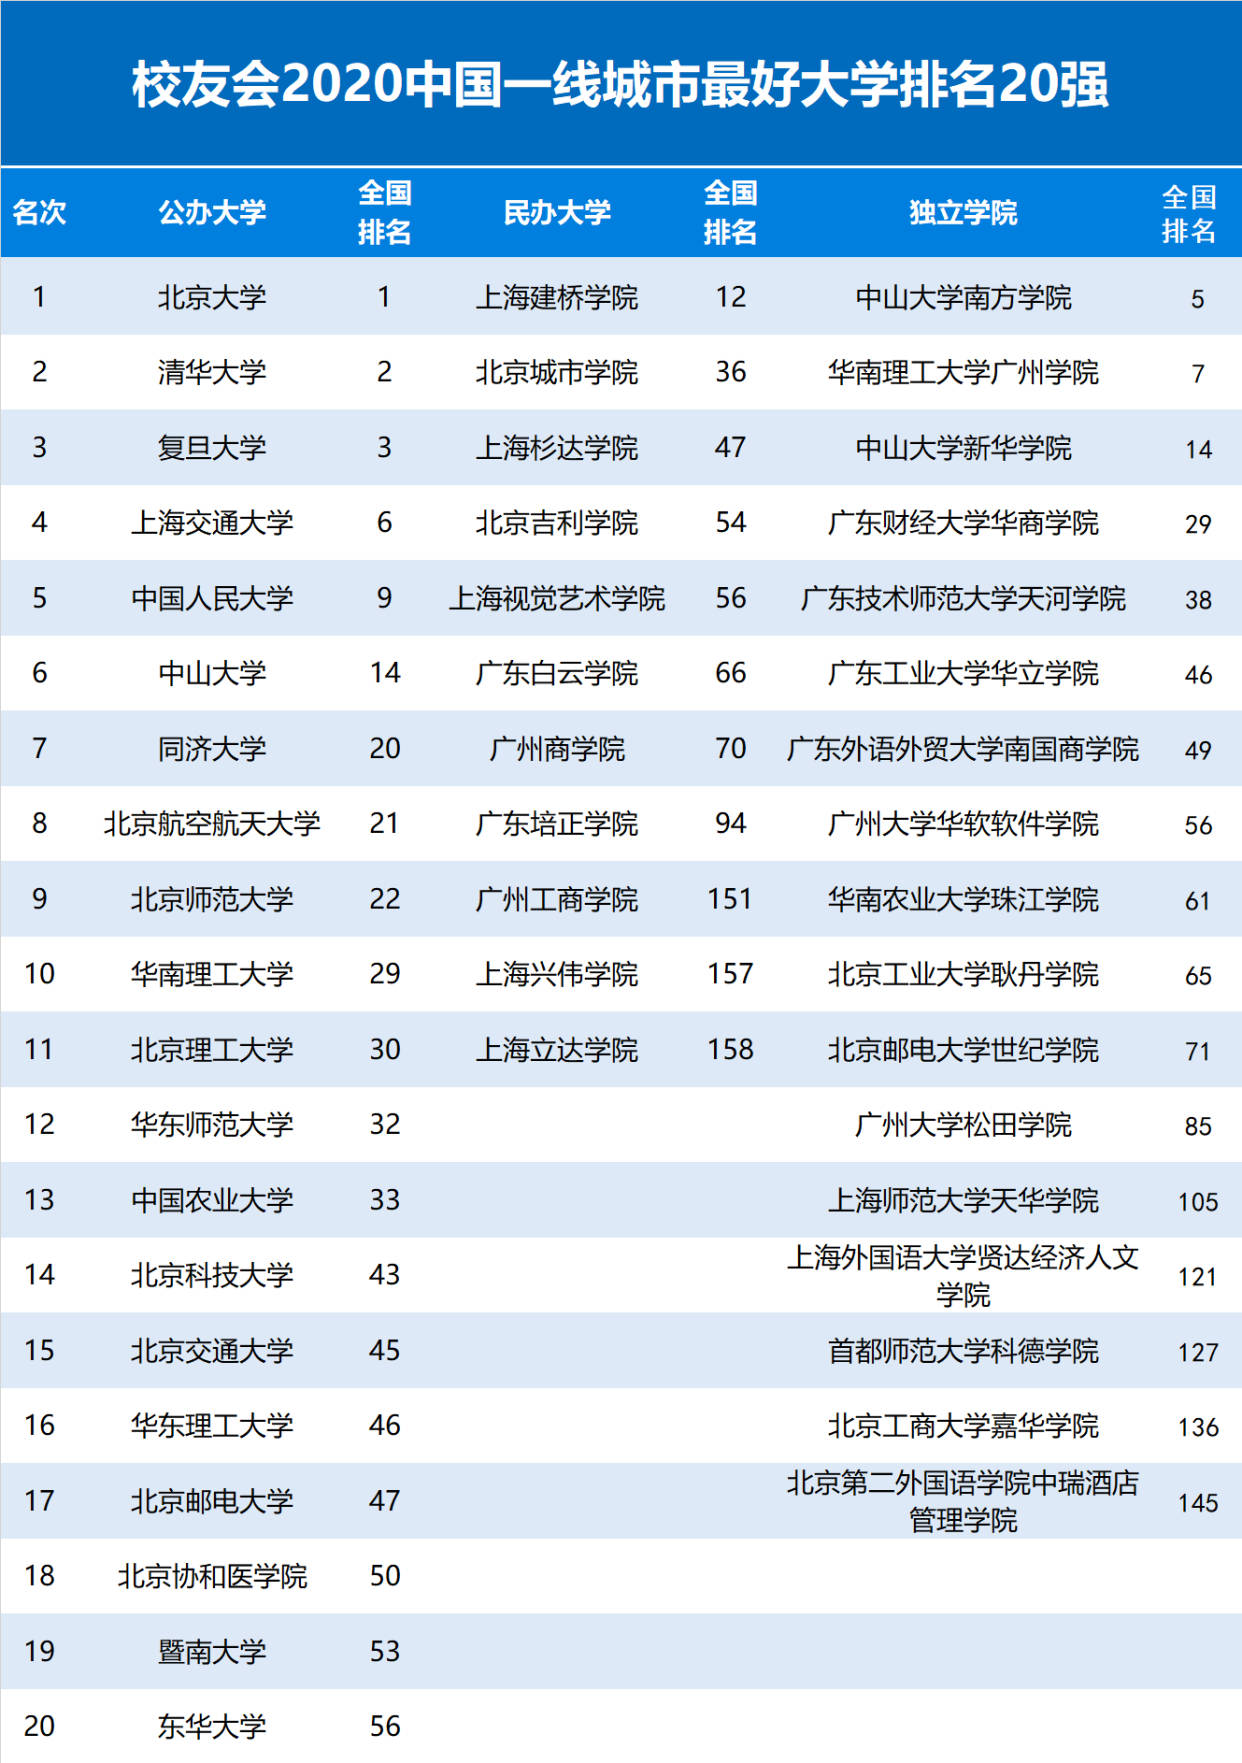 2020民办大学综合排名_2020华中地区民办大学排名:33所高校上榜,湖南涉外经